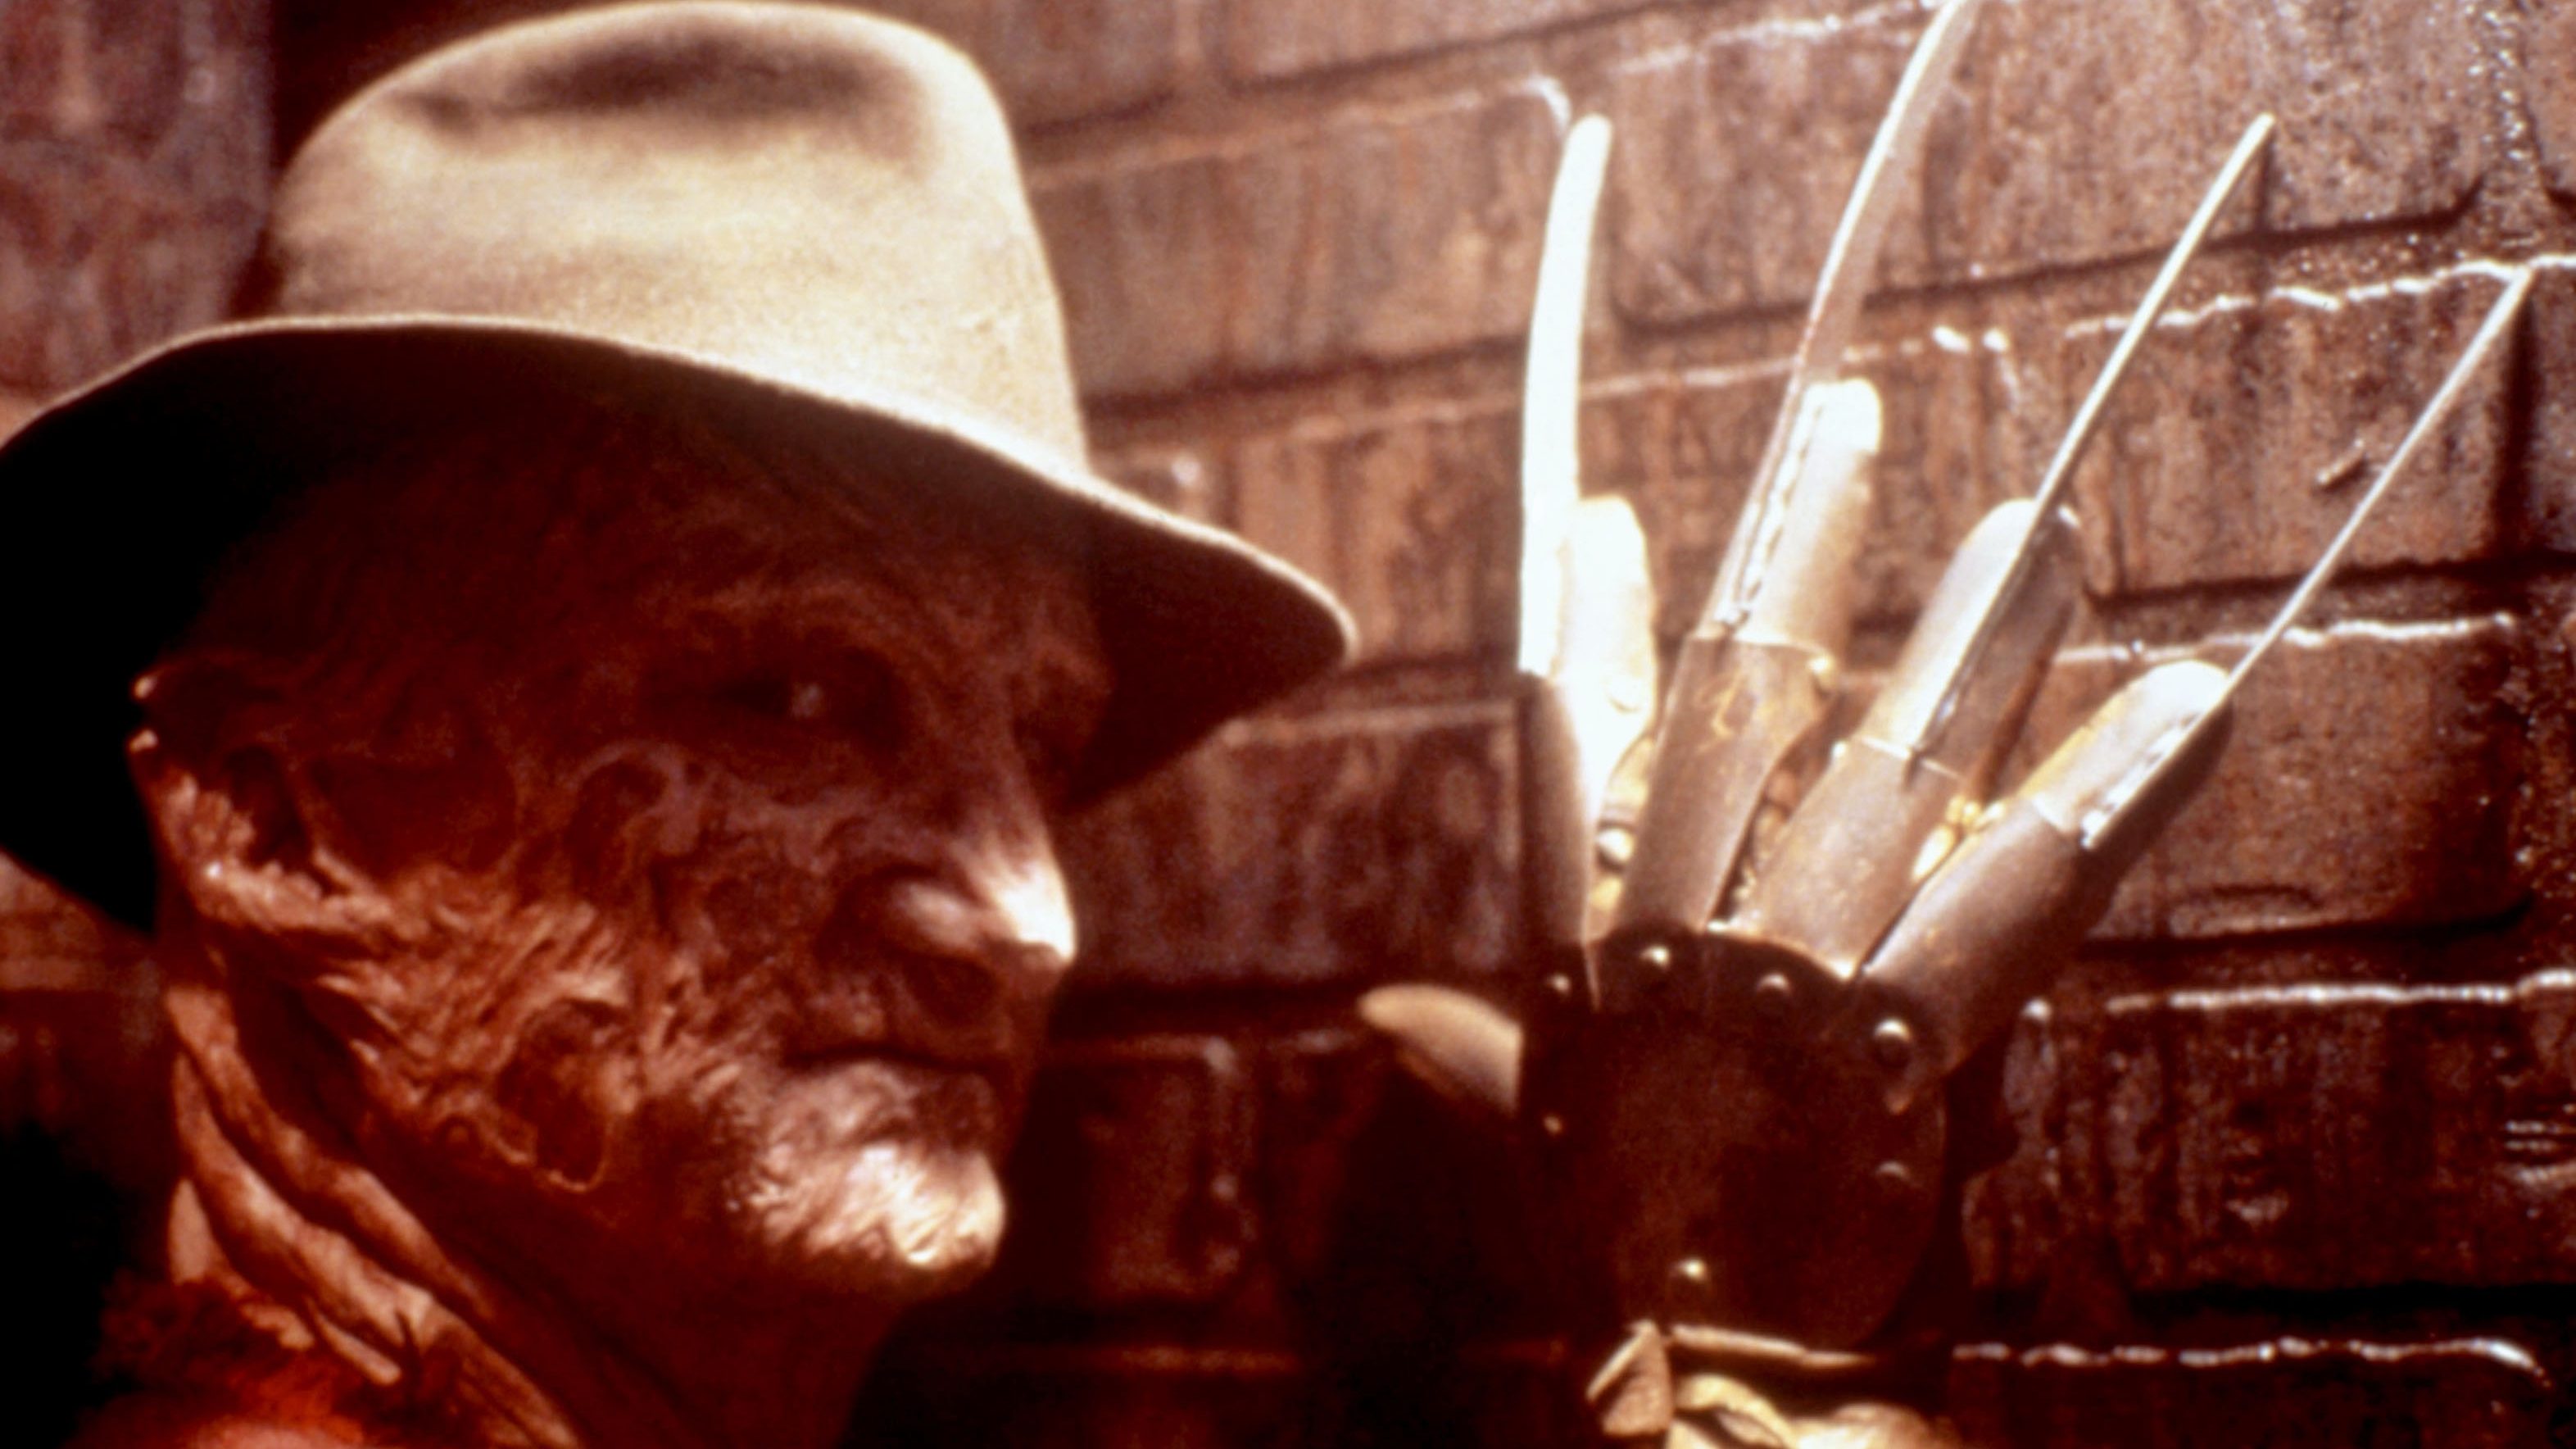 

	
		El actor de Freddy Krueger, Robert Englund, habla de sus 50 años de carrera, de por qué no volverá a interpretar a Freddy y de quién debería ser el próximo villano de 'Elm Street'
	
	